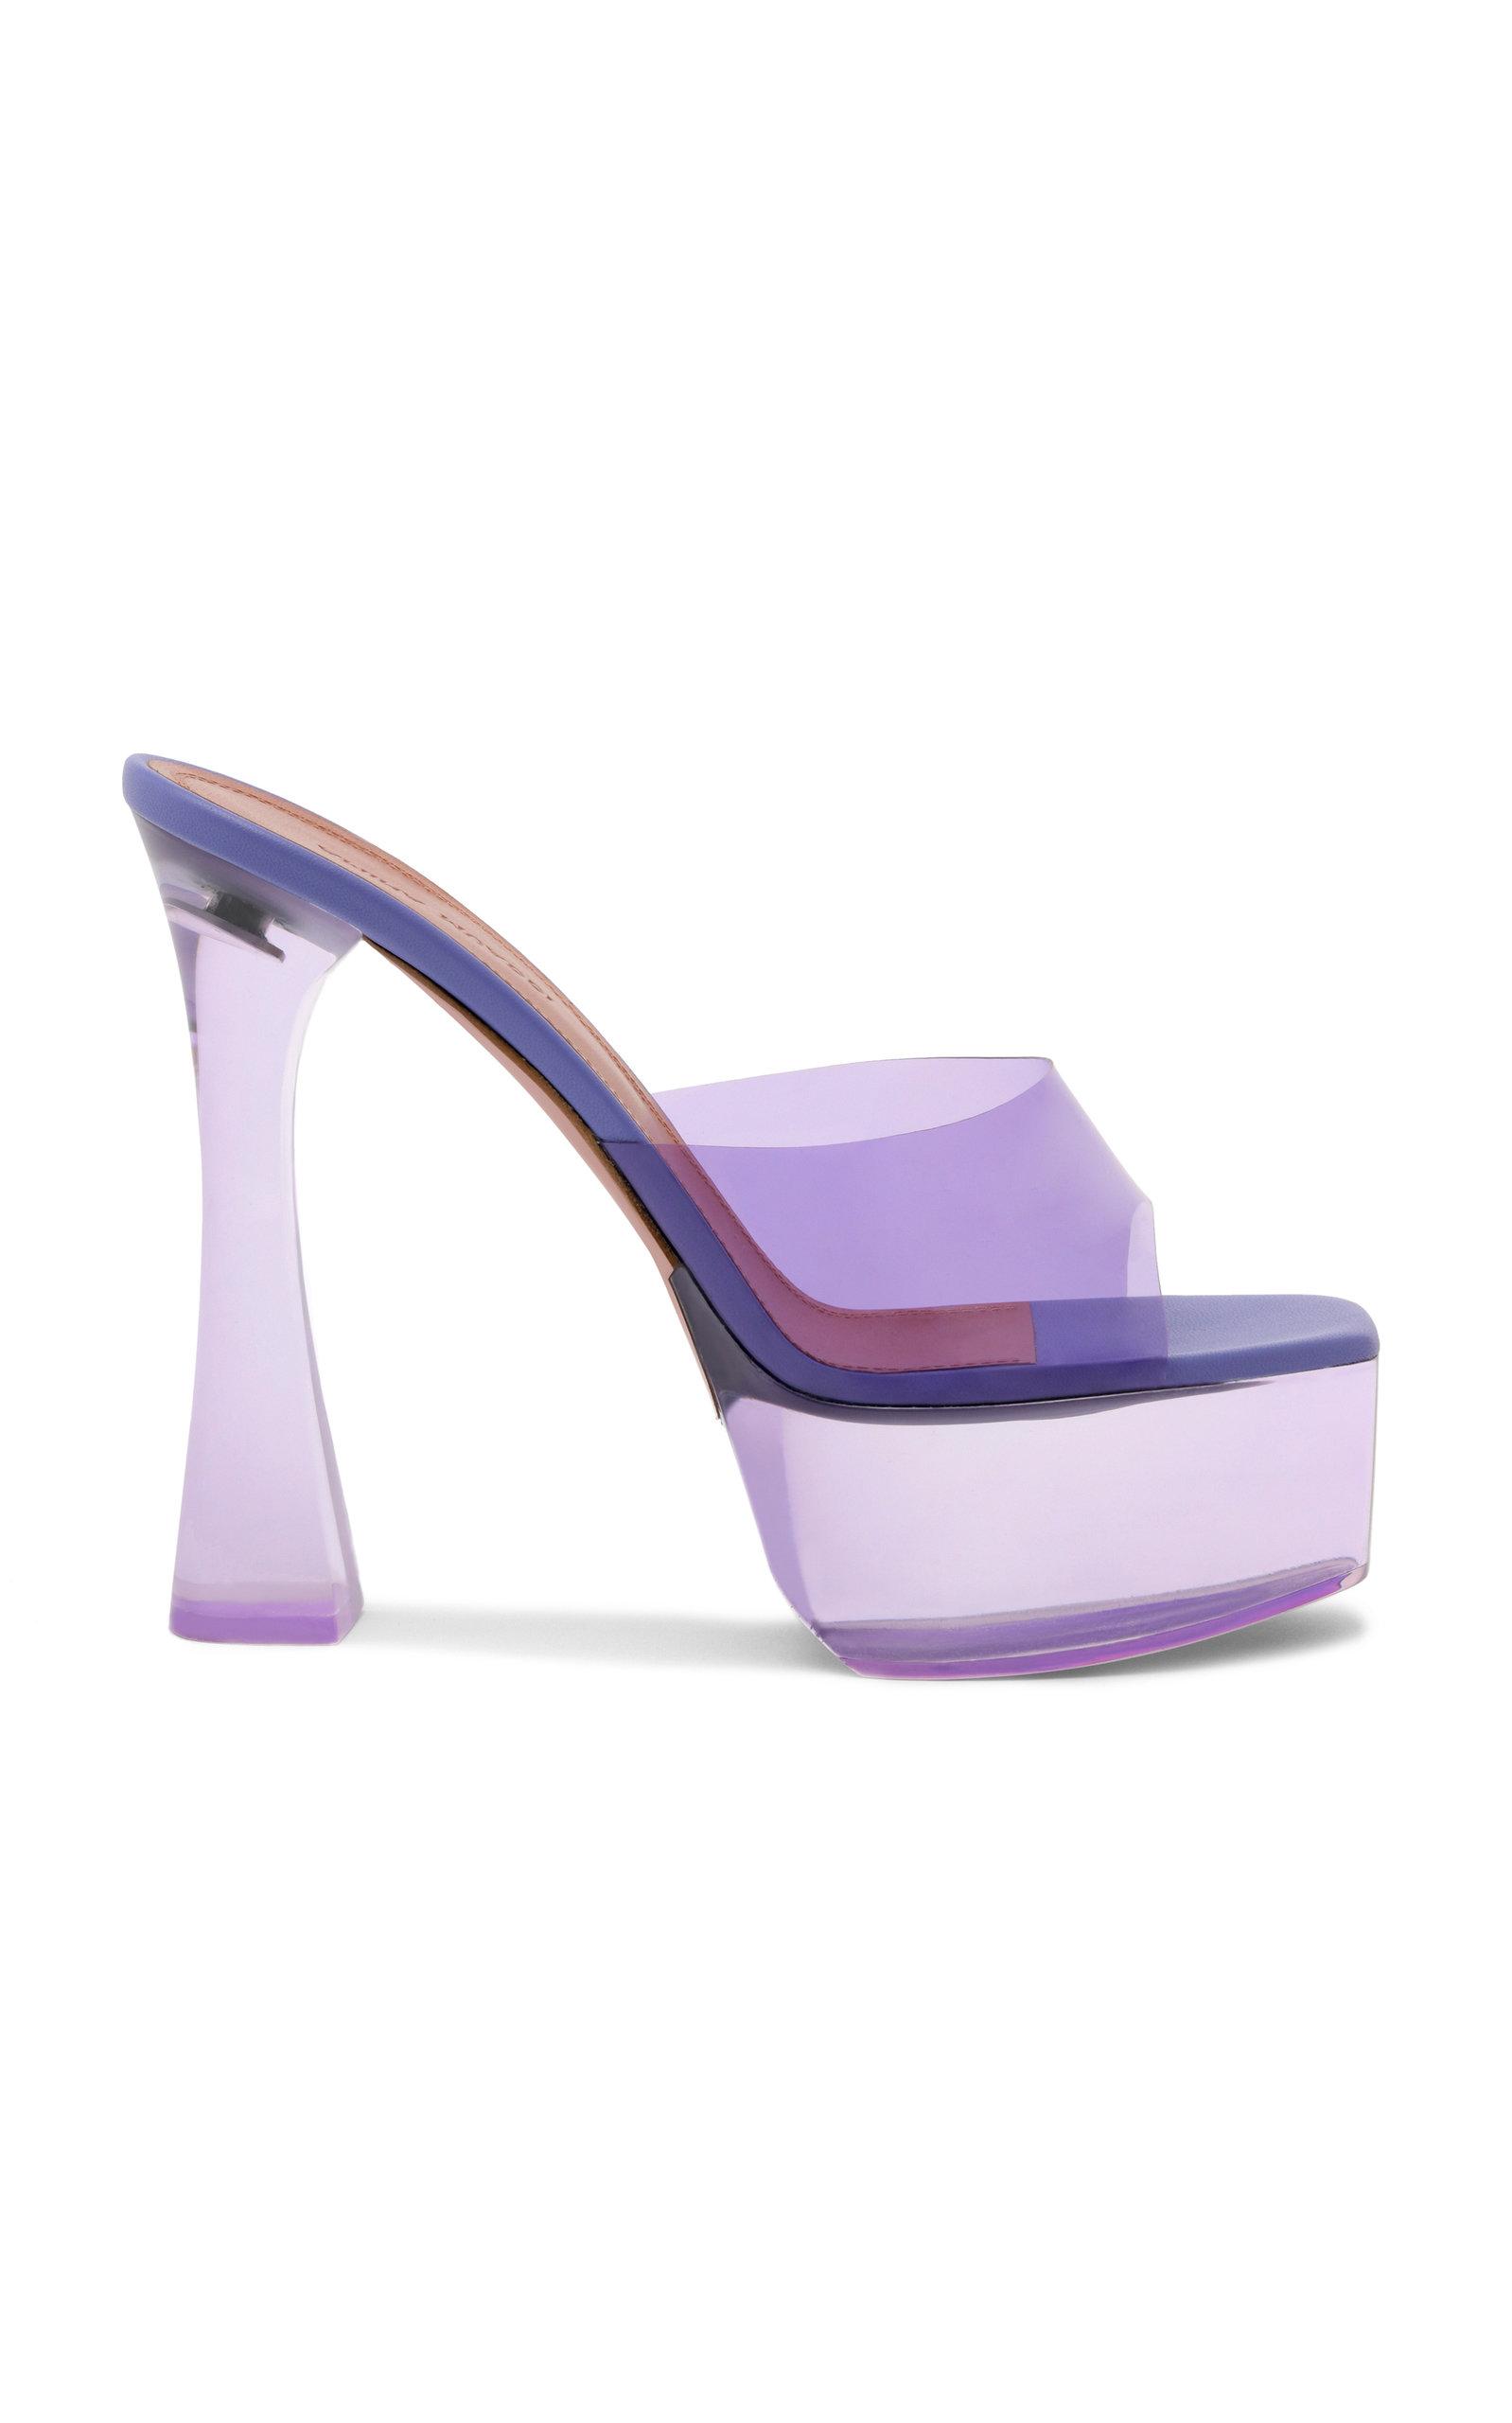 AMINA MUADDI Dalida Pvc Platform Sandals in Purple | Lyst